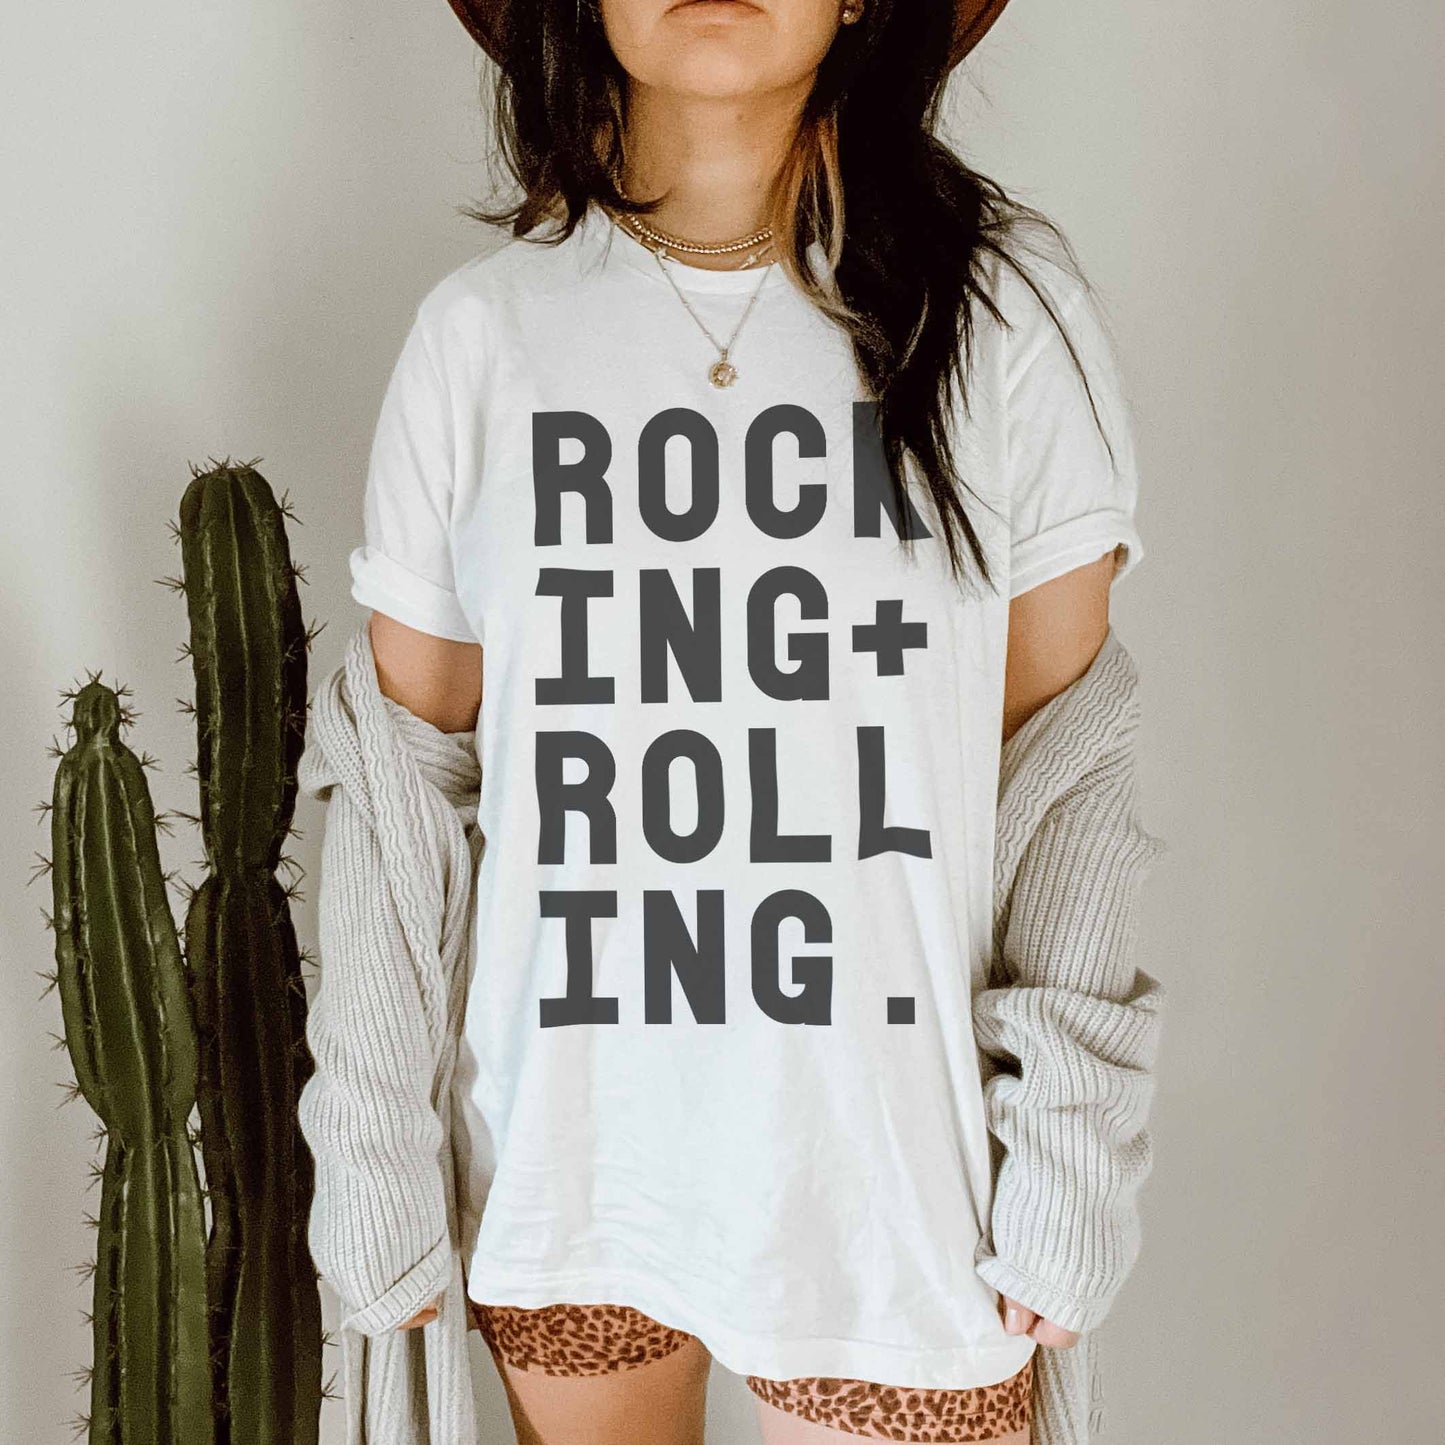 Rocking + Rolling